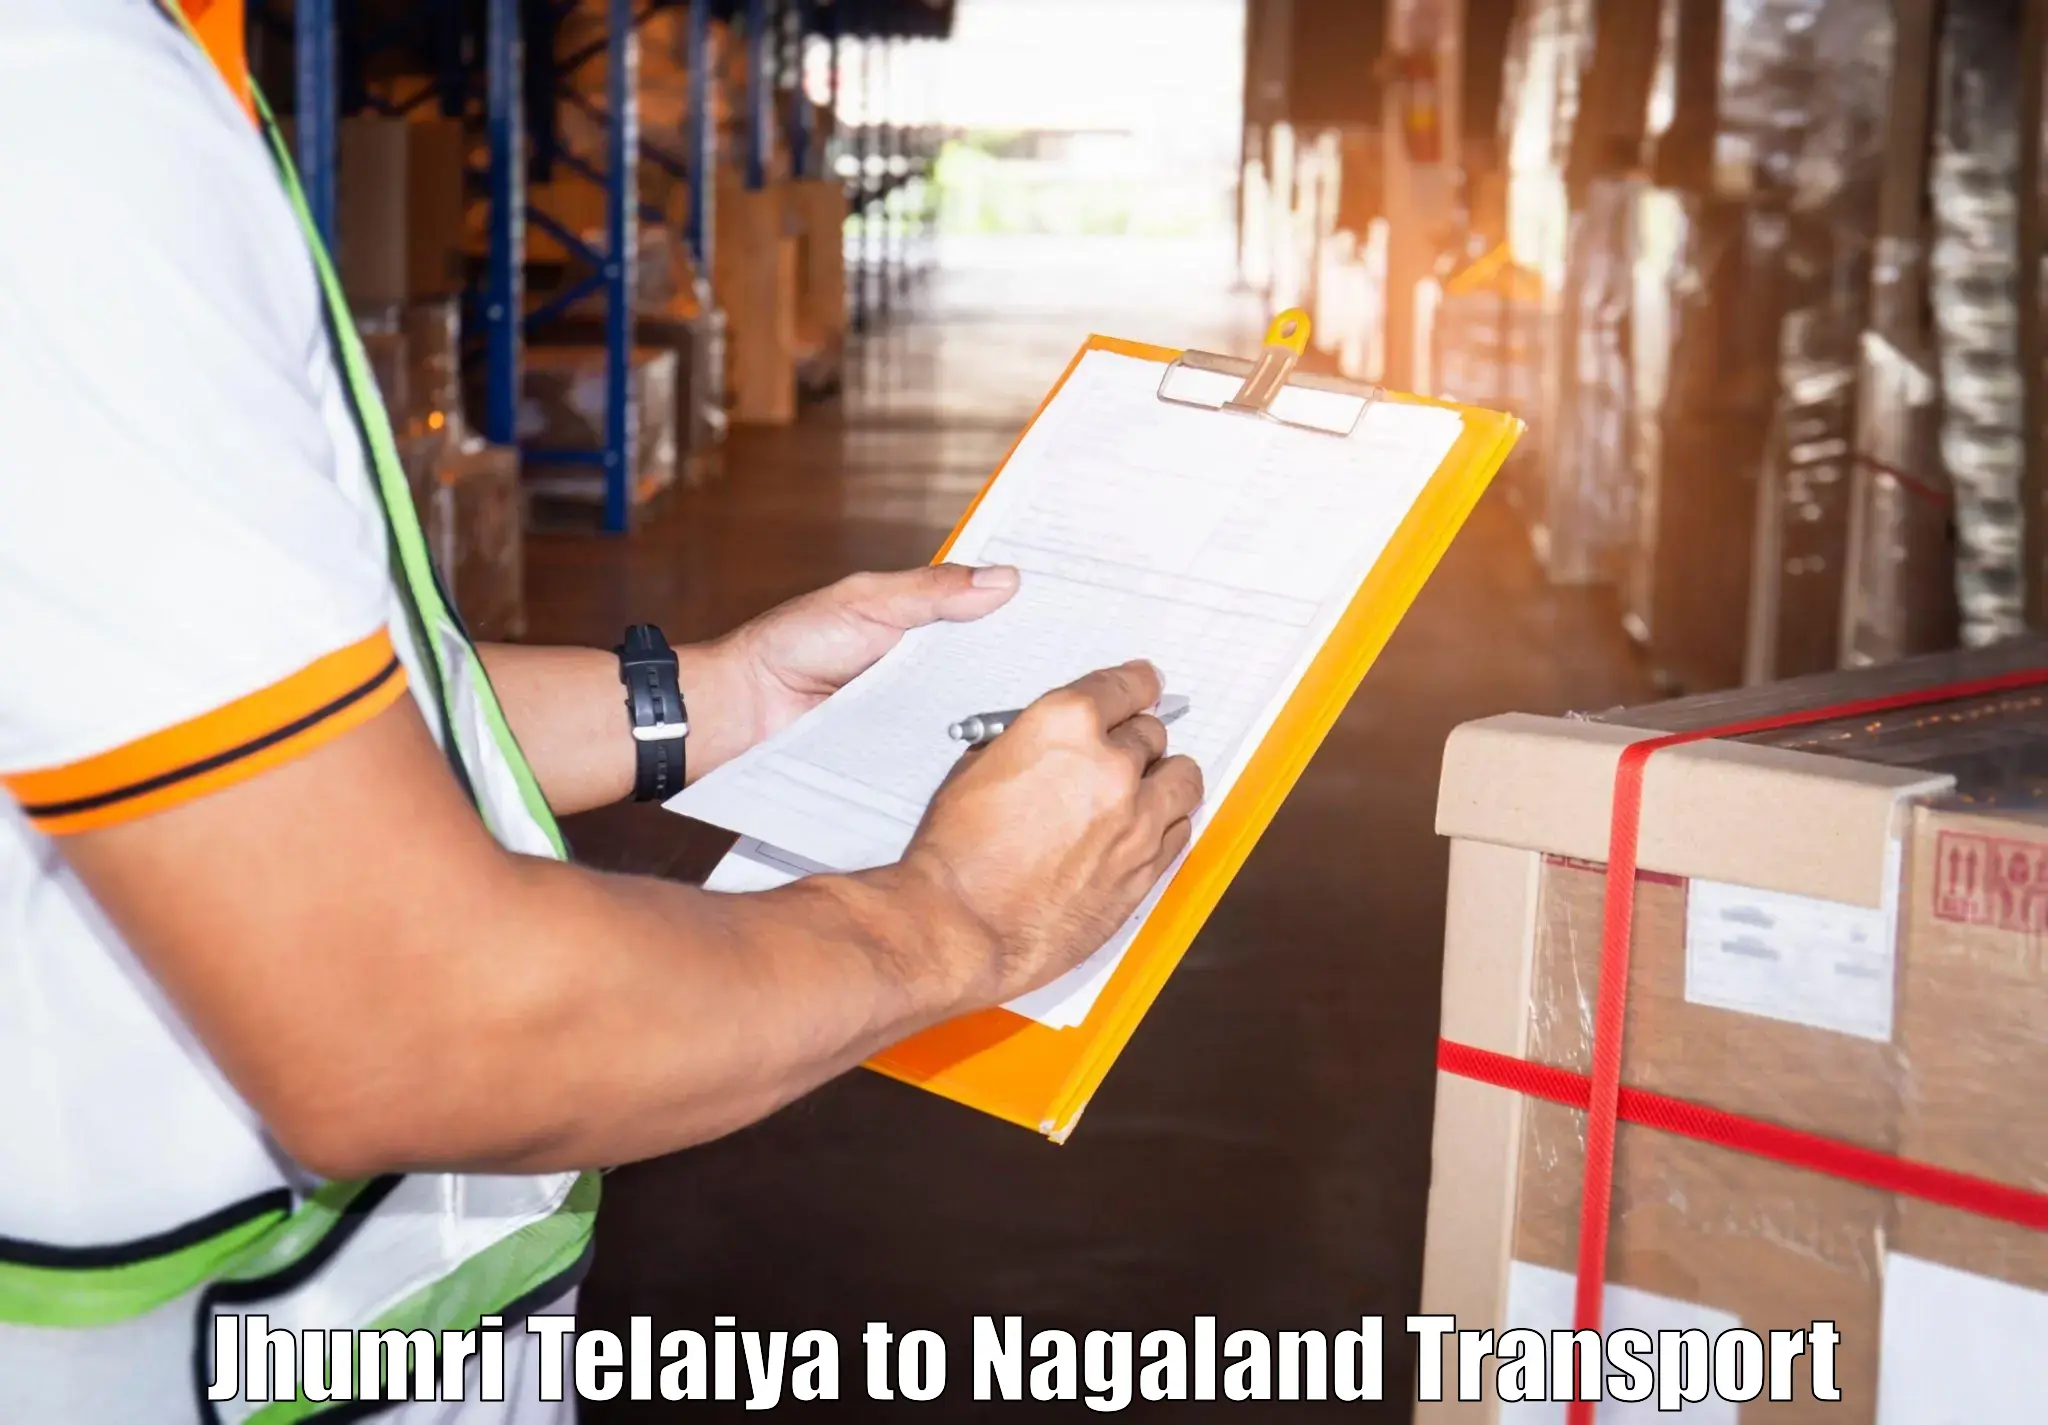 Container transport service Jhumri Telaiya to NIT Nagaland